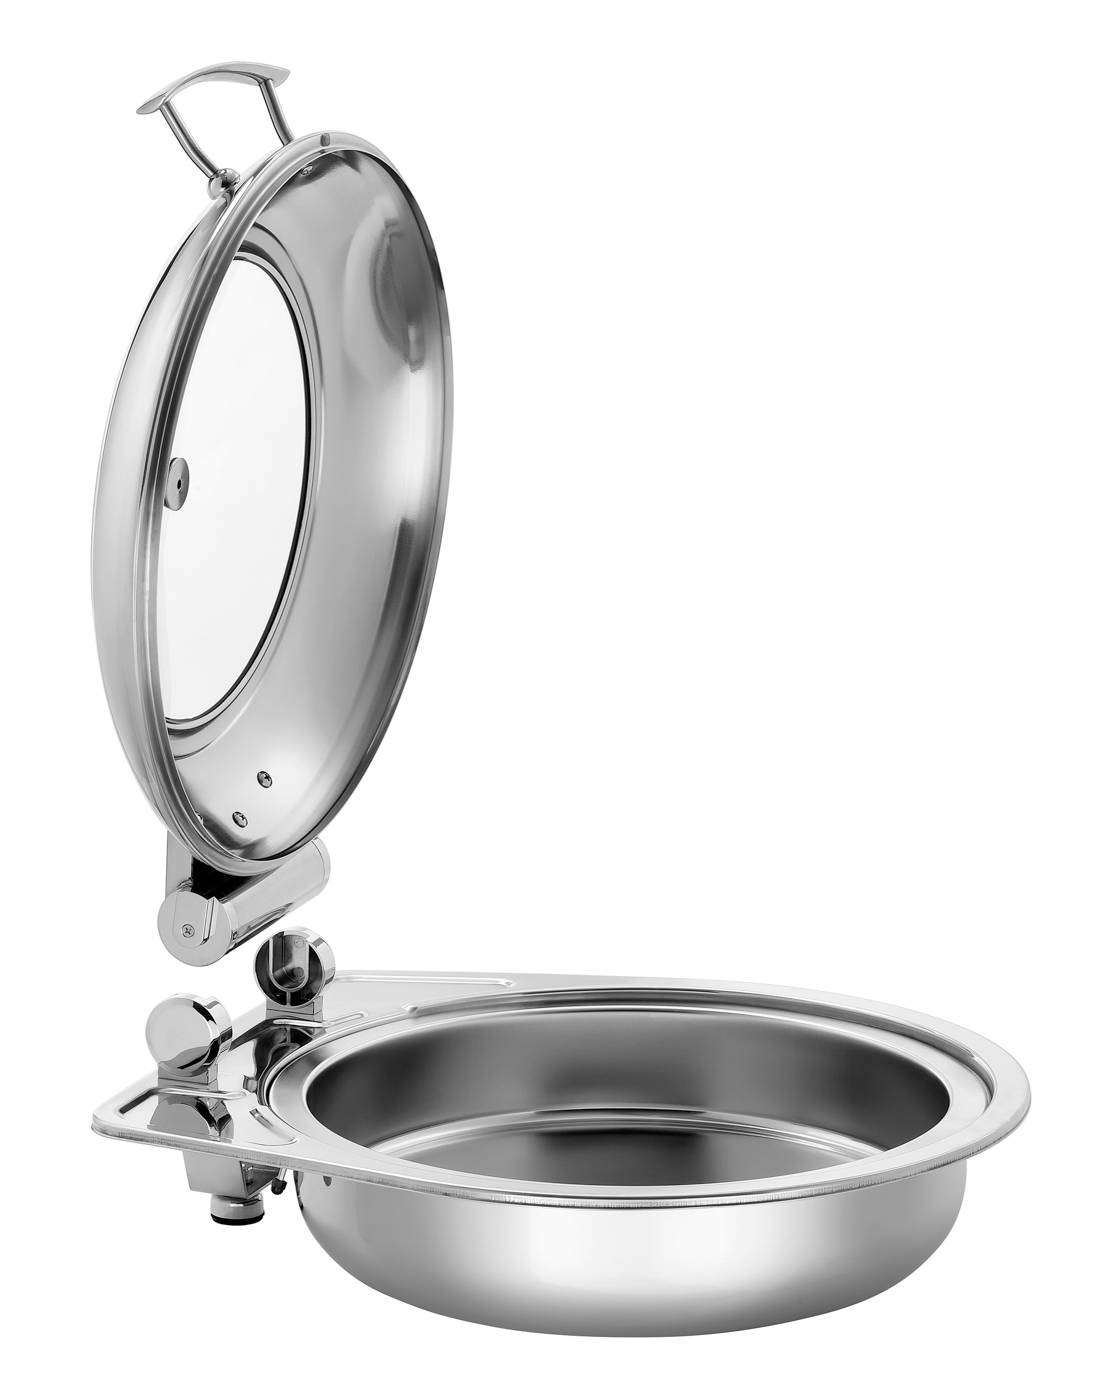 Bartscher Chafing-Dish 6,2L Flexible | Durchmesser Innenbehälter: 390 mm | Maße: 43,5 x 47,2 x 185 cm. Gewicht: 5,4 kg